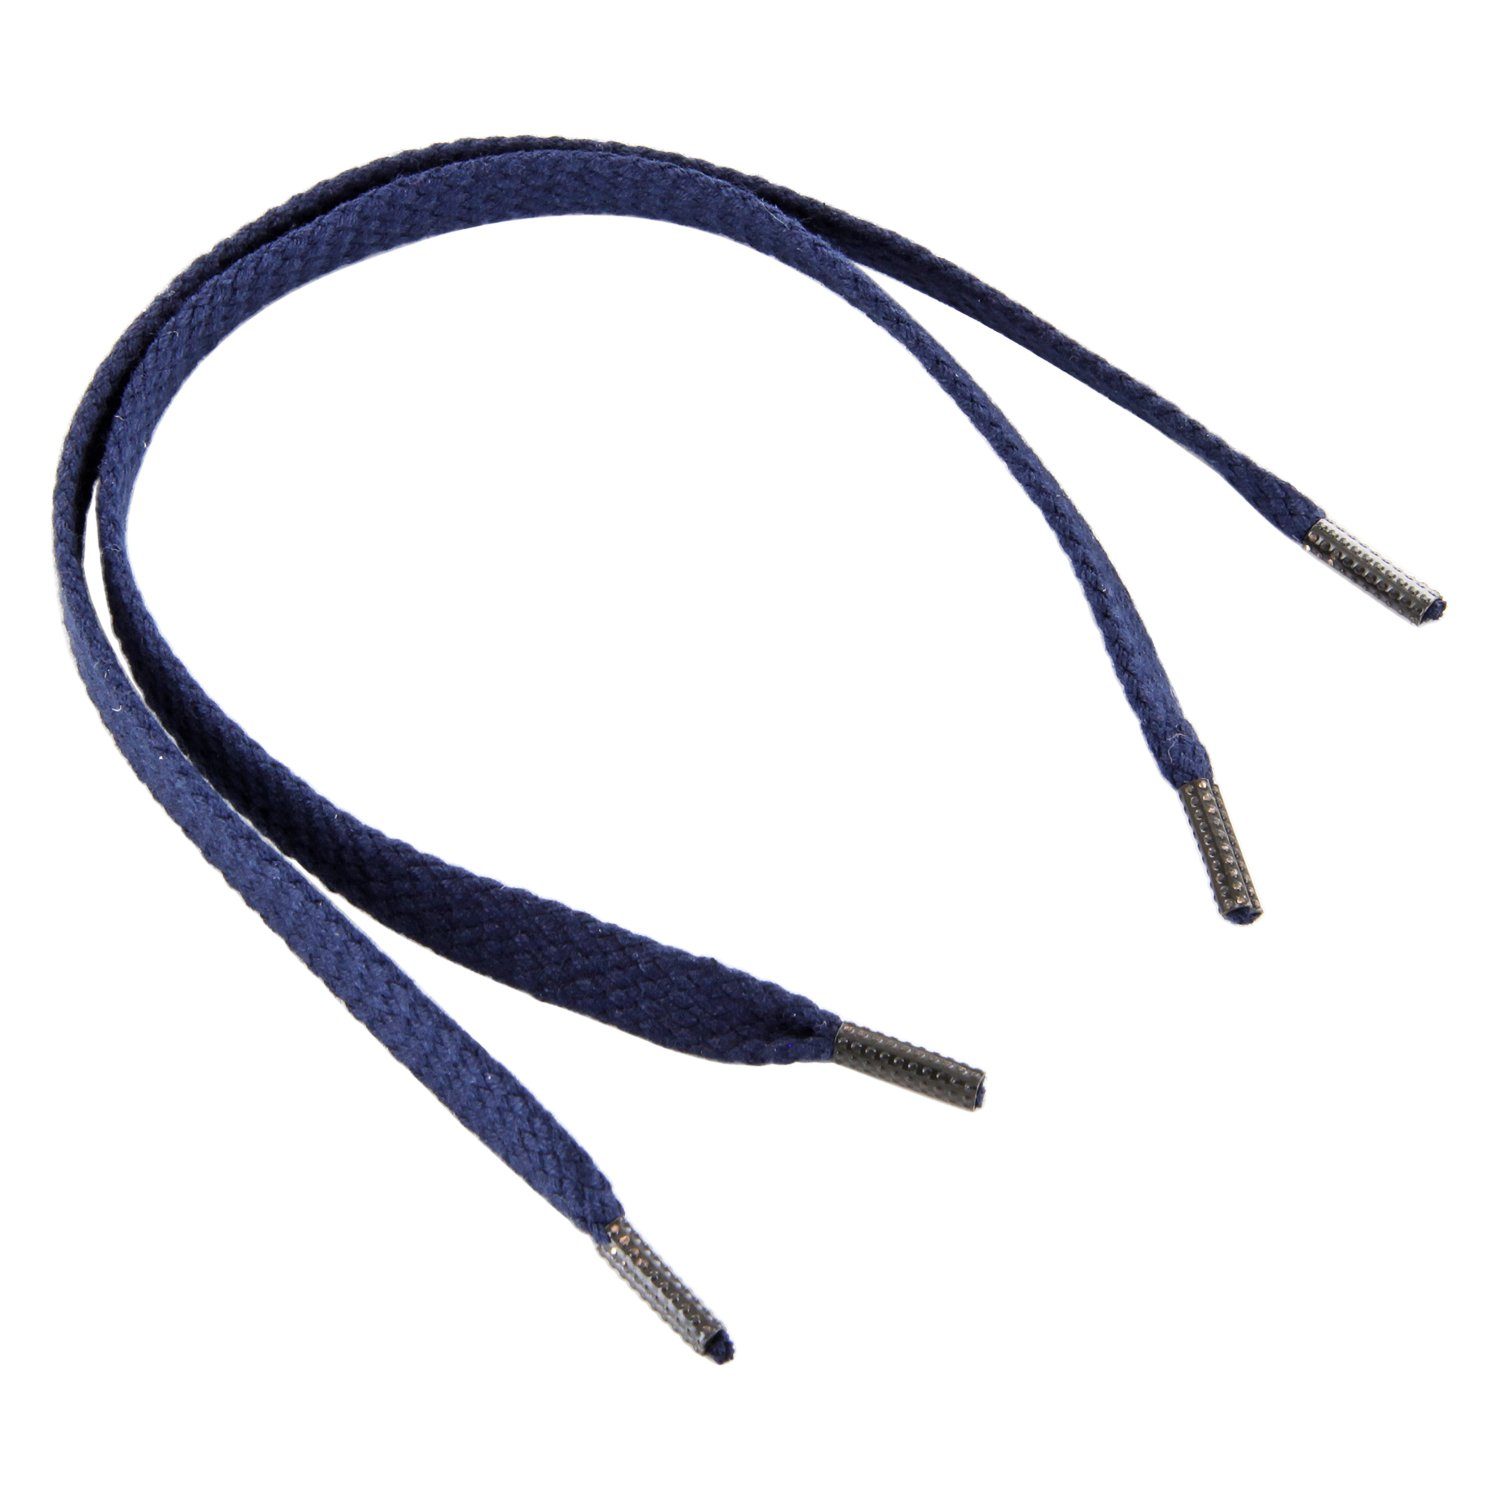 Rema Schnürsenkel »Rema Schnürsenkel Marine - flach - ca. 6-7 mm breit für  Sie nach Wunschlänge geschnitten und mit Metallenden versehen« online  kaufen | OTTO